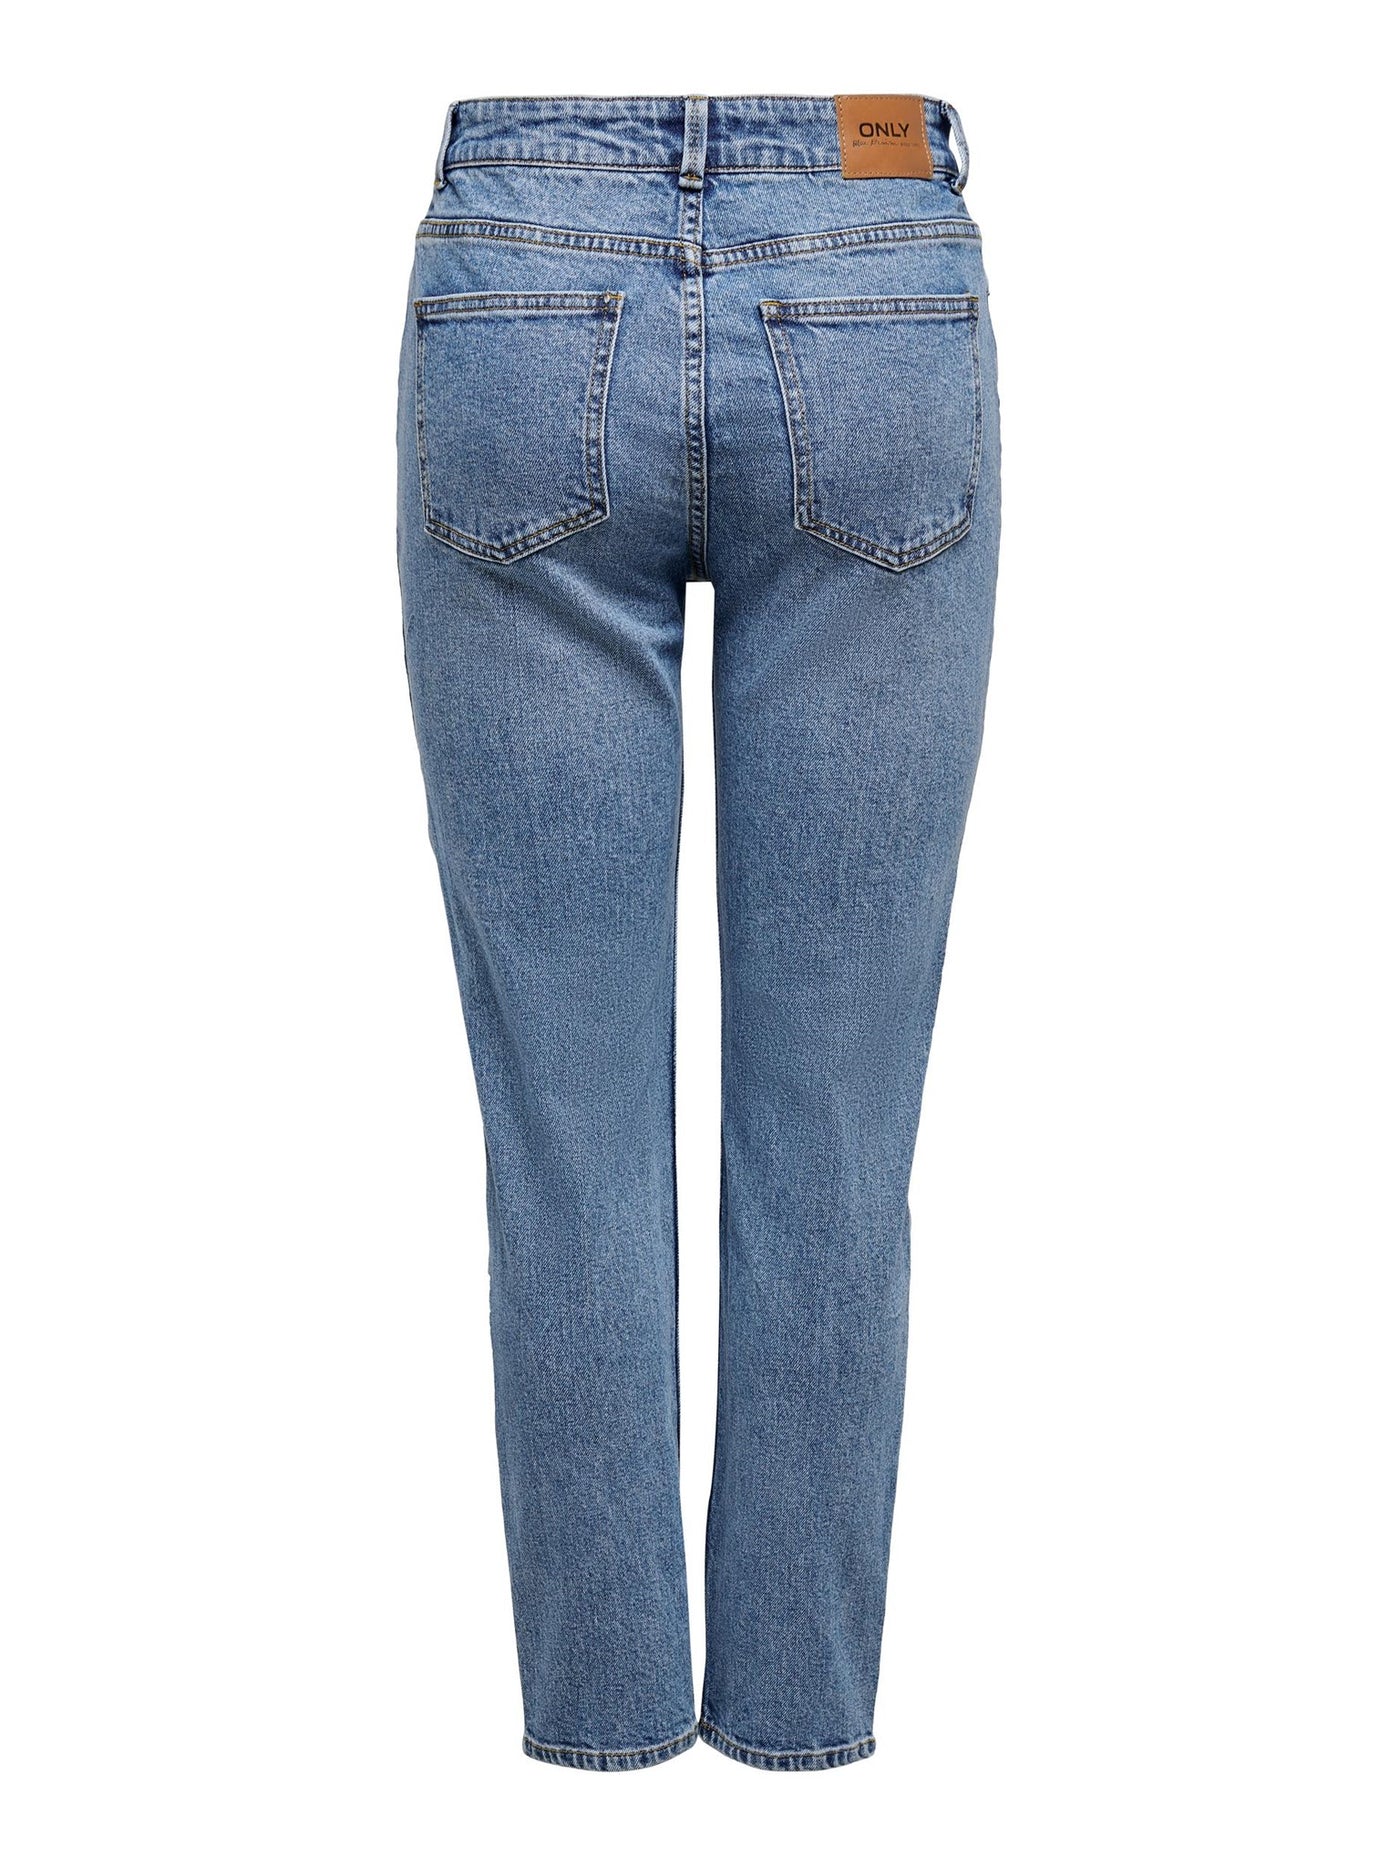 Emily High Waist Jeans - Medium Blå - ONLY 3